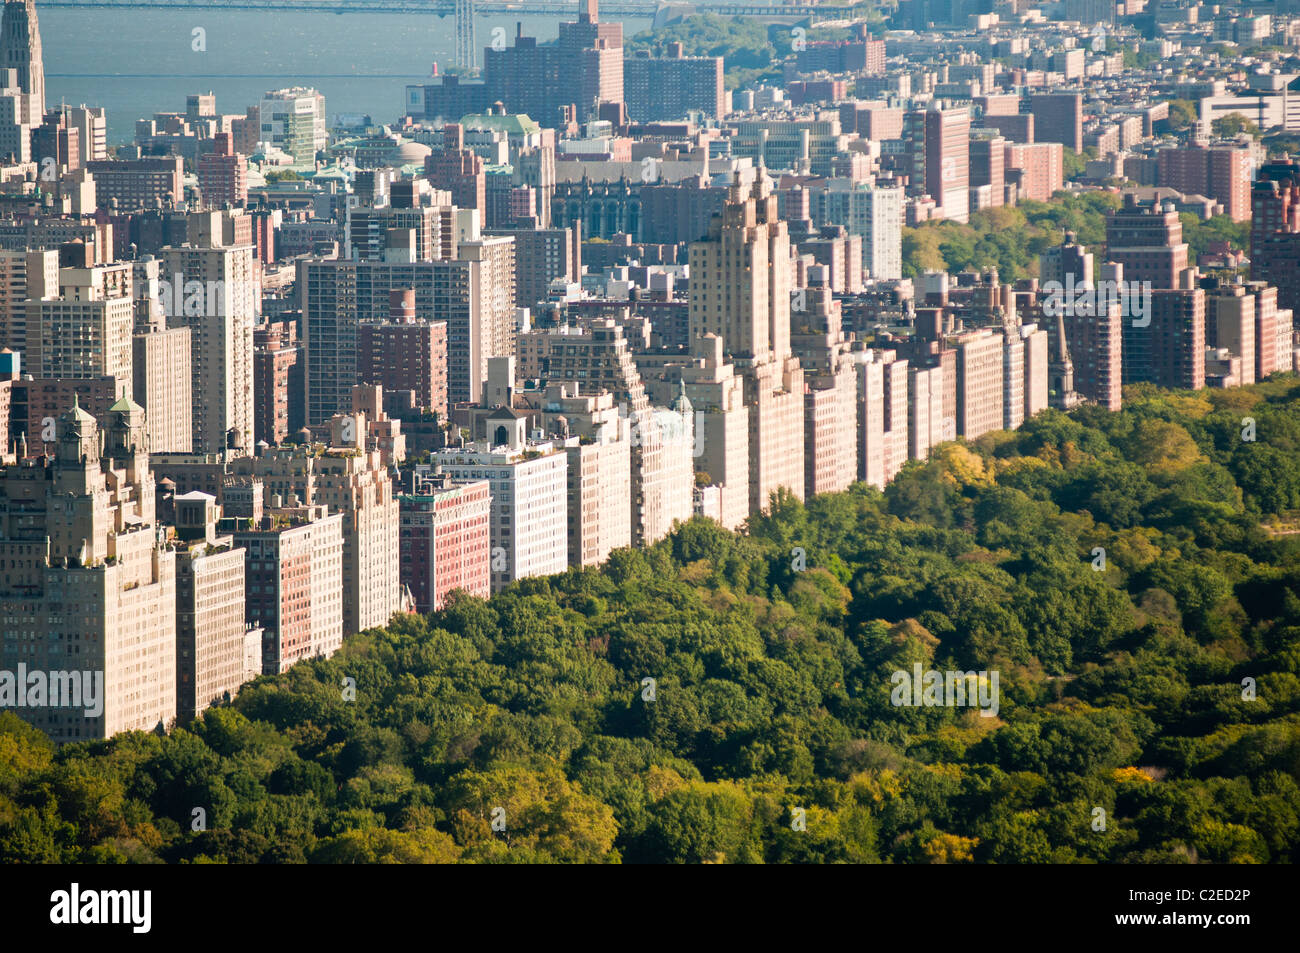 Vue aérienne de Central Park et de la rangée de bâtiments de l'Upper West Side, Manhattan, New York City, USA, NEW YORK, NY Banque D'Images